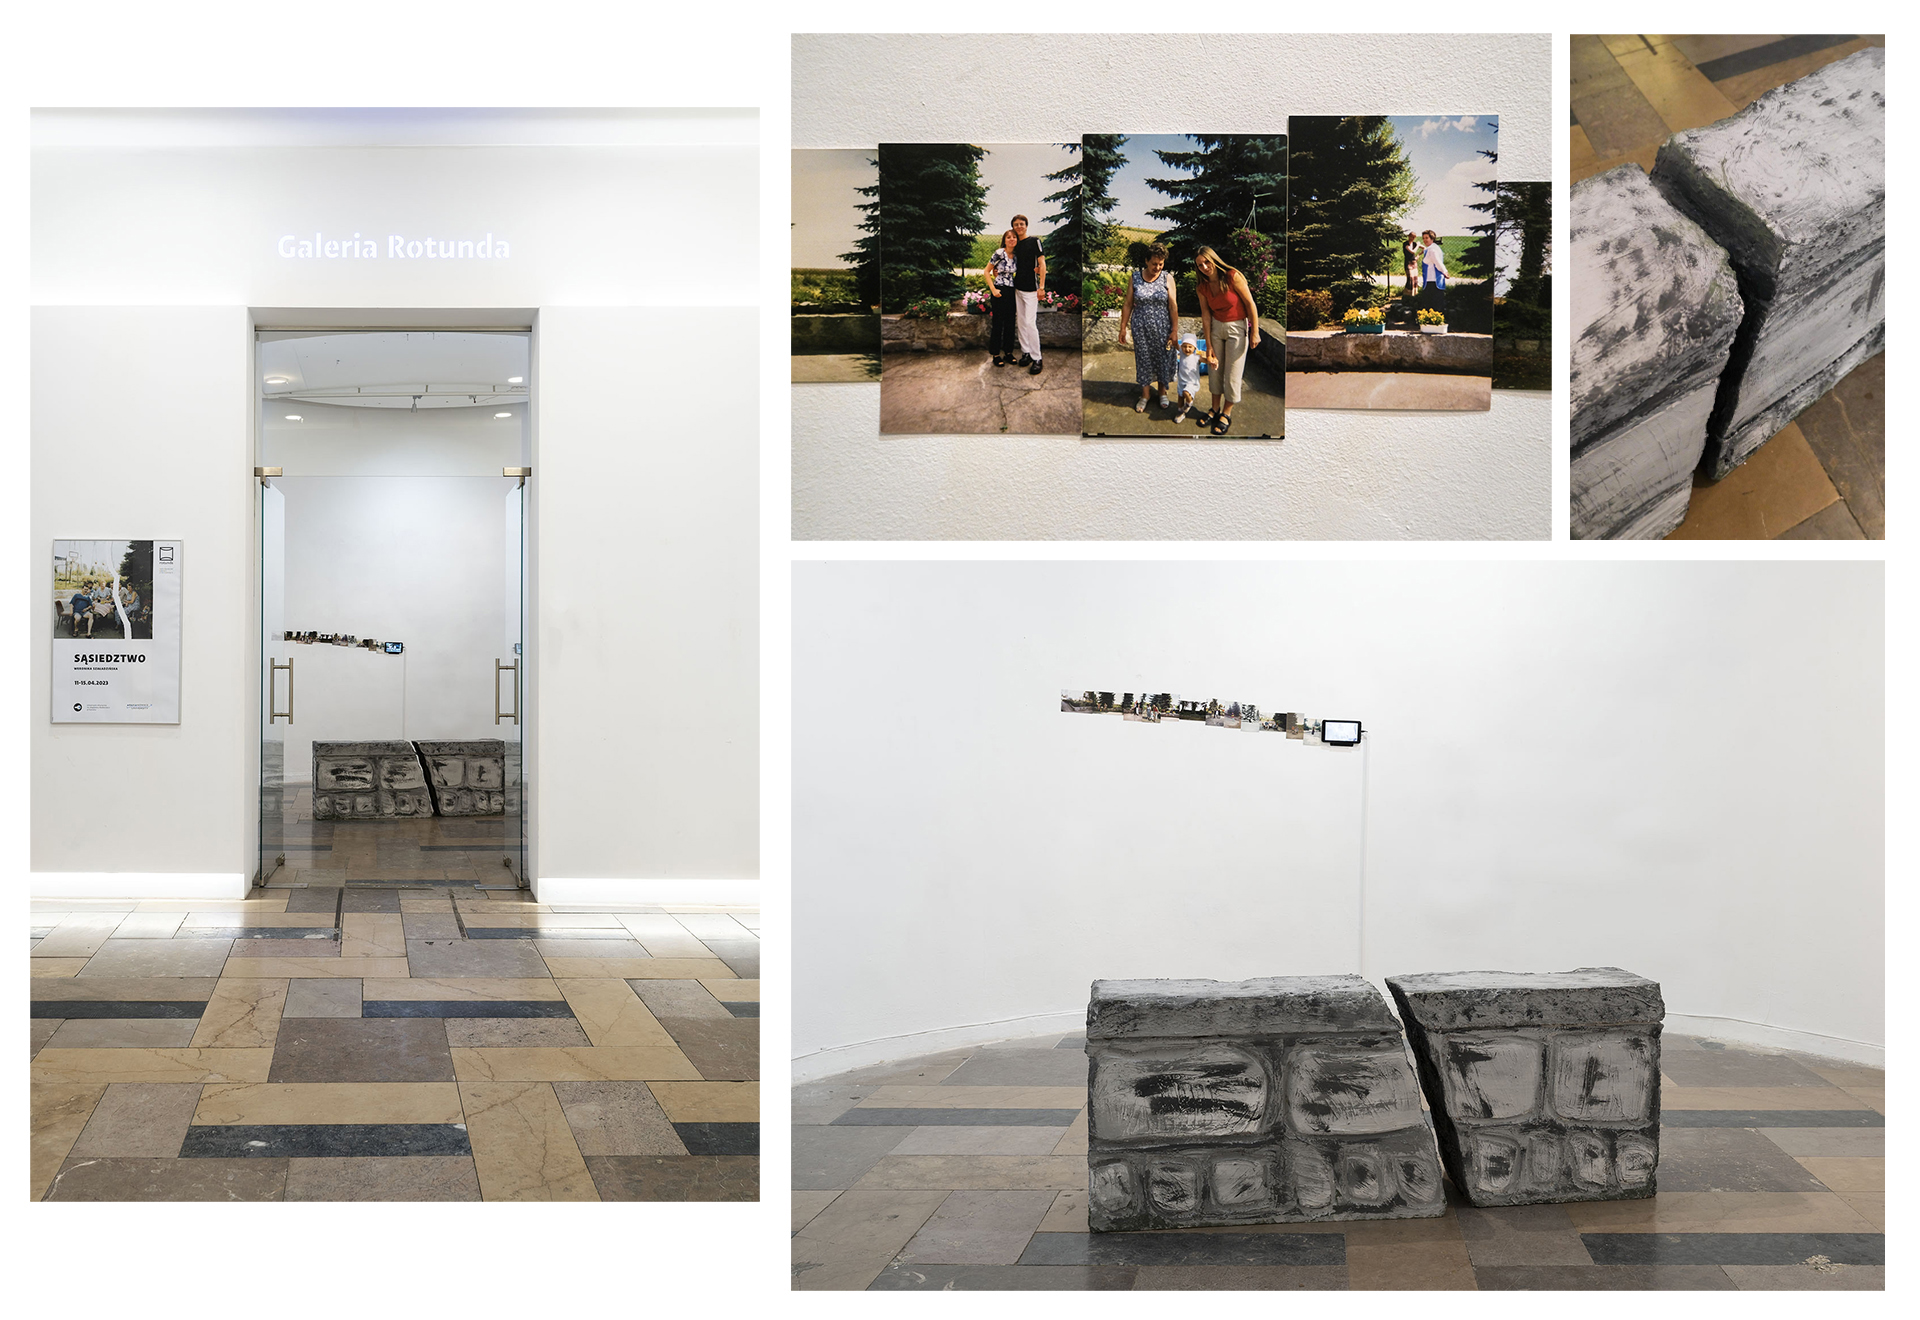 kompozycja z 4 fotografii przedstawiających dokumentację wystawy w galerii, ogólny plan z wejściem do galerii, zbliżenie na fotografie rodzinne, zbliżenie na obiekt rzeźbiarski-pęknięty mur, ogólny plan przedstawiający całość instalacji z pękniętym murem na pierwszym planie.